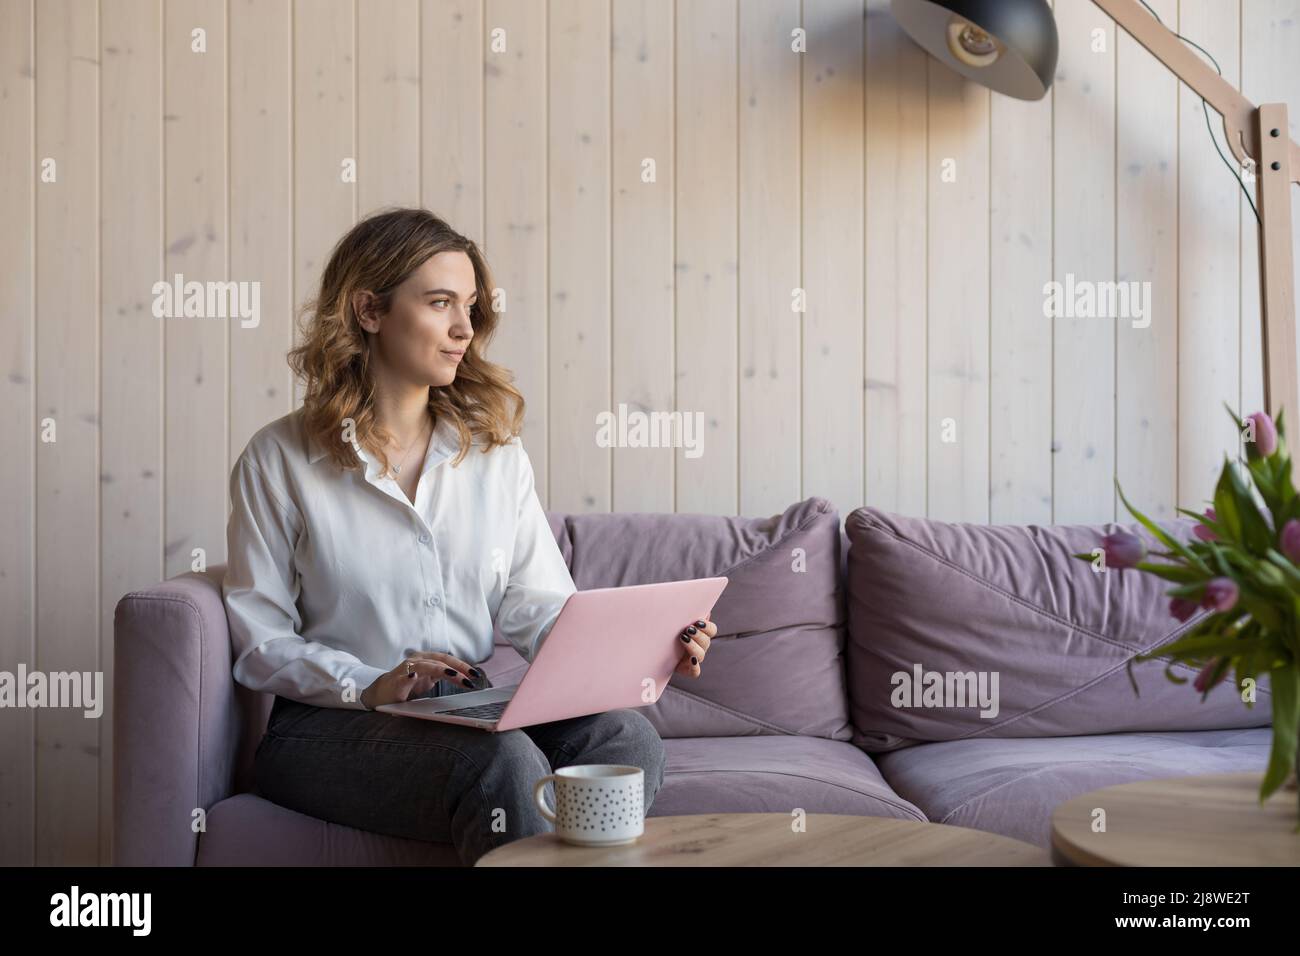 Junge seriöse braunhaarige Frau arbeitet zu Hause online auf der Couch sitzend, reflektiert sie auf einem Brief an den Kunden, aus dem Fenster blickend. Online zu Hause arbeiten Stockfoto